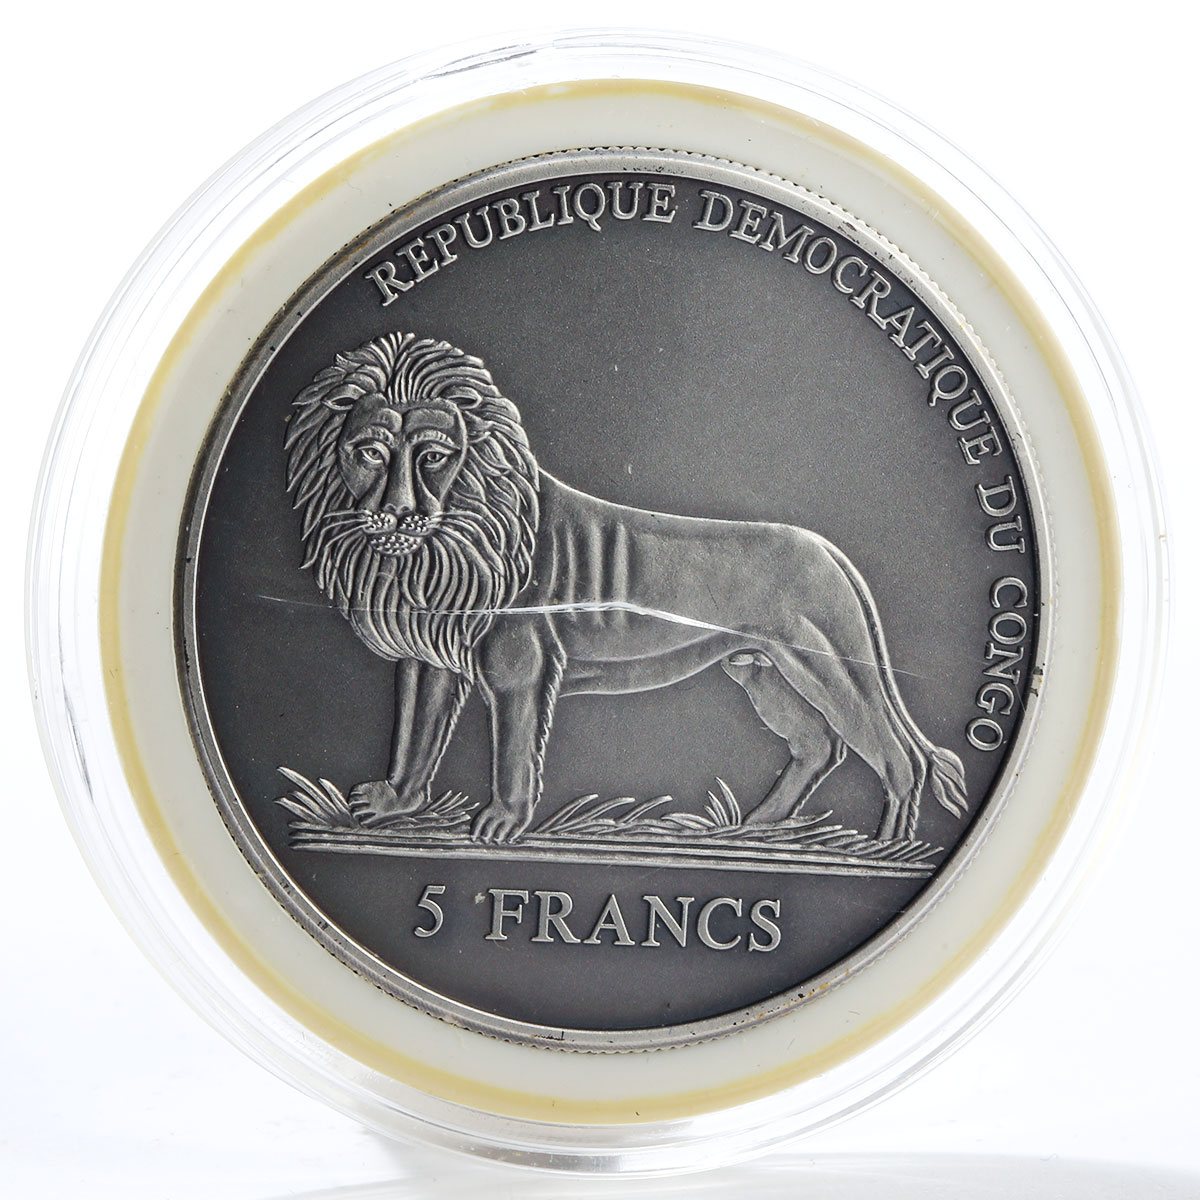 Congo 5 francs Sailor calendar for 50 years time anchor marine copper coin 2004